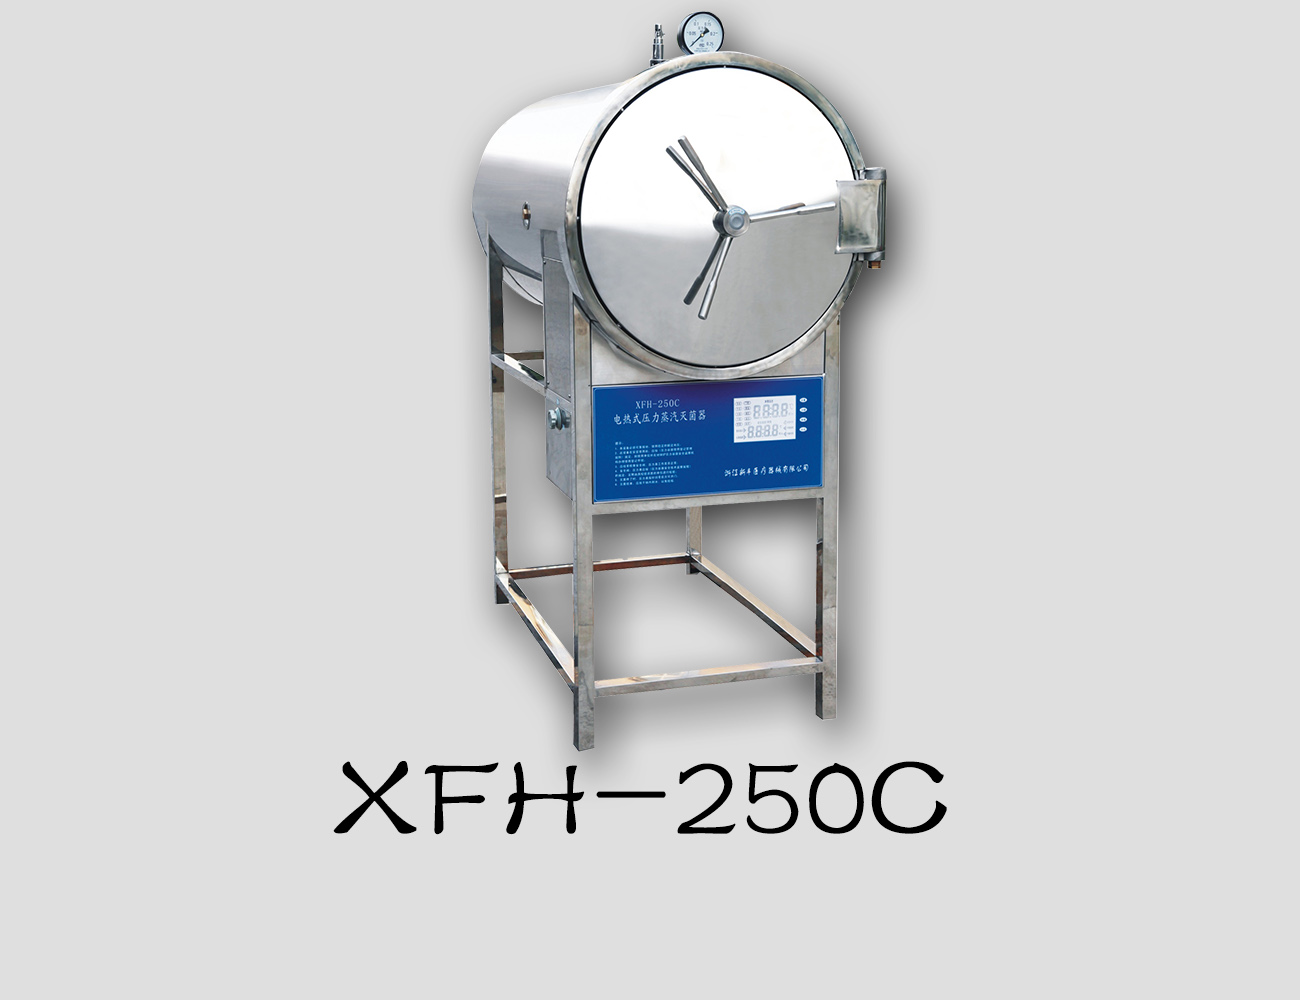 浙江新丰卧式灭菌器XFH-250C